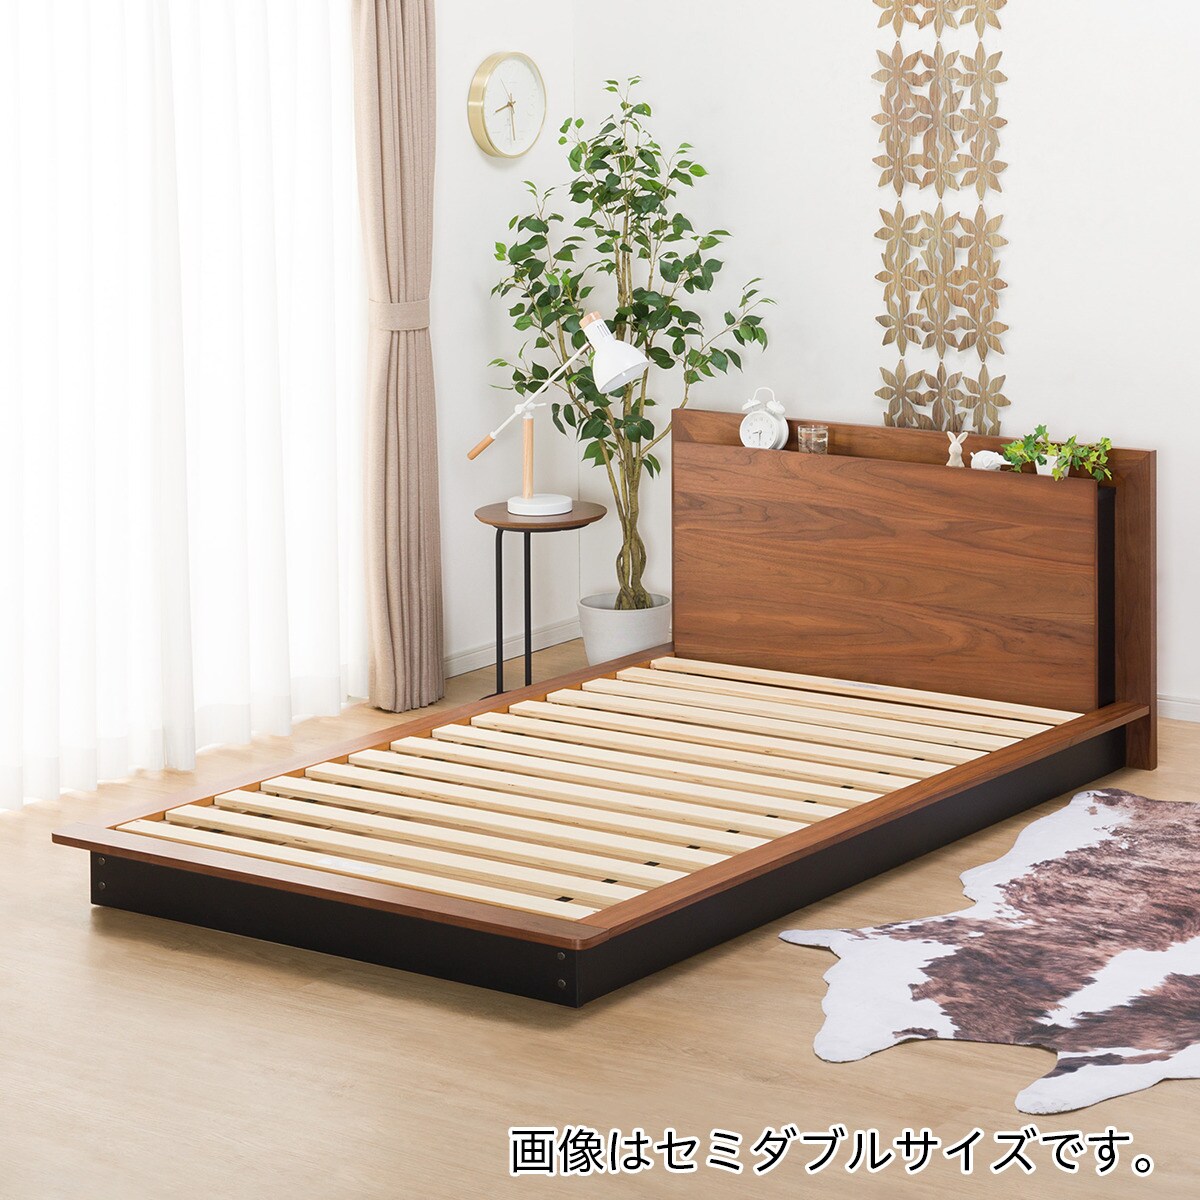 ニトリ ベッドフレーム ダブルサイズ すのこ 家具 寝具 寝室 P022総合リサイクルPLAZA